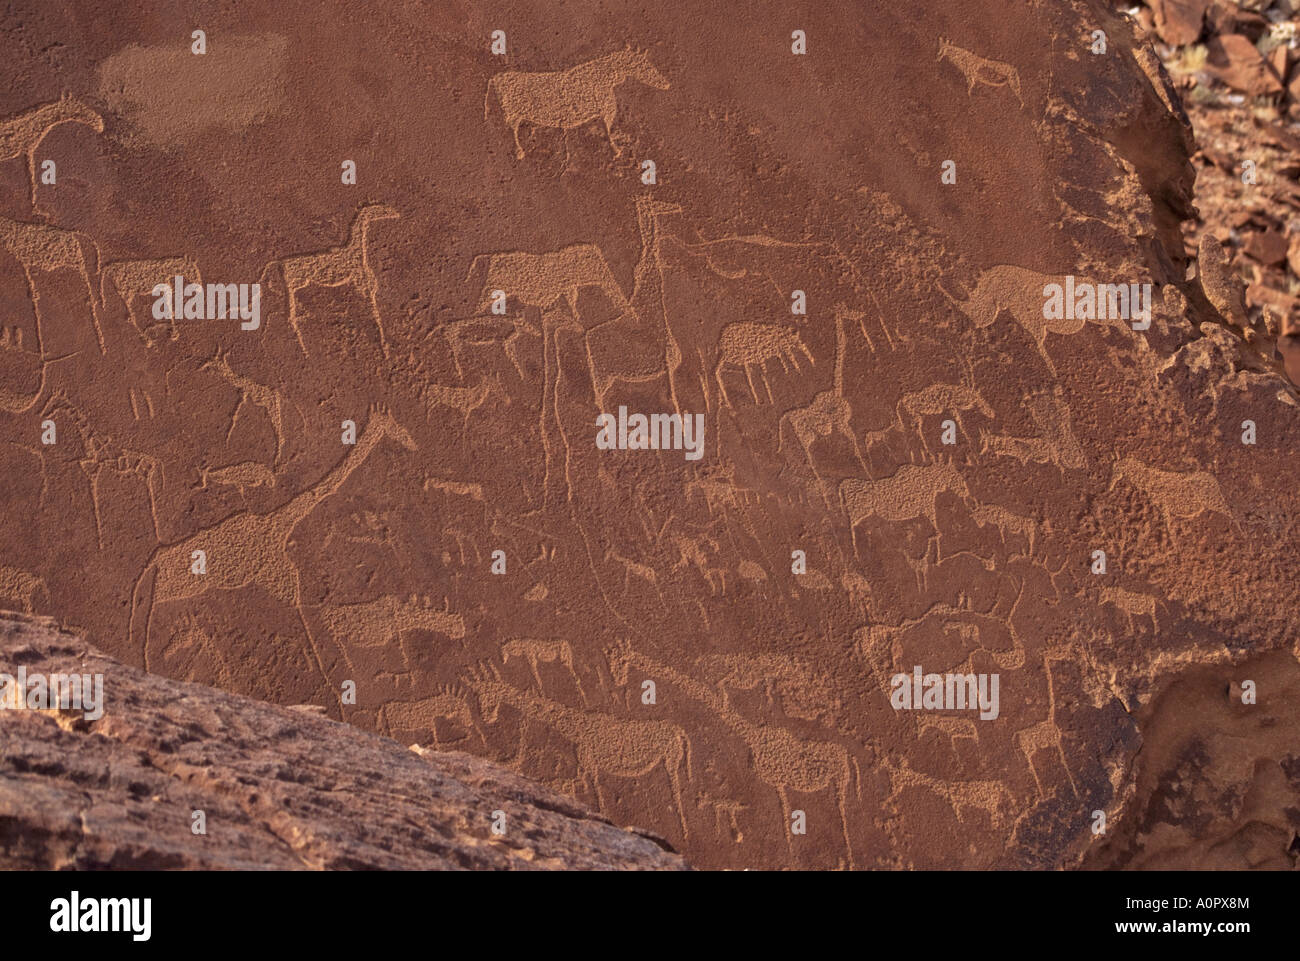 Eaux-fortes dans le grès 6000 ans plus belle rock art in Africa Afrique Namibie Damaraland Twyfelfontein Banque D'Images